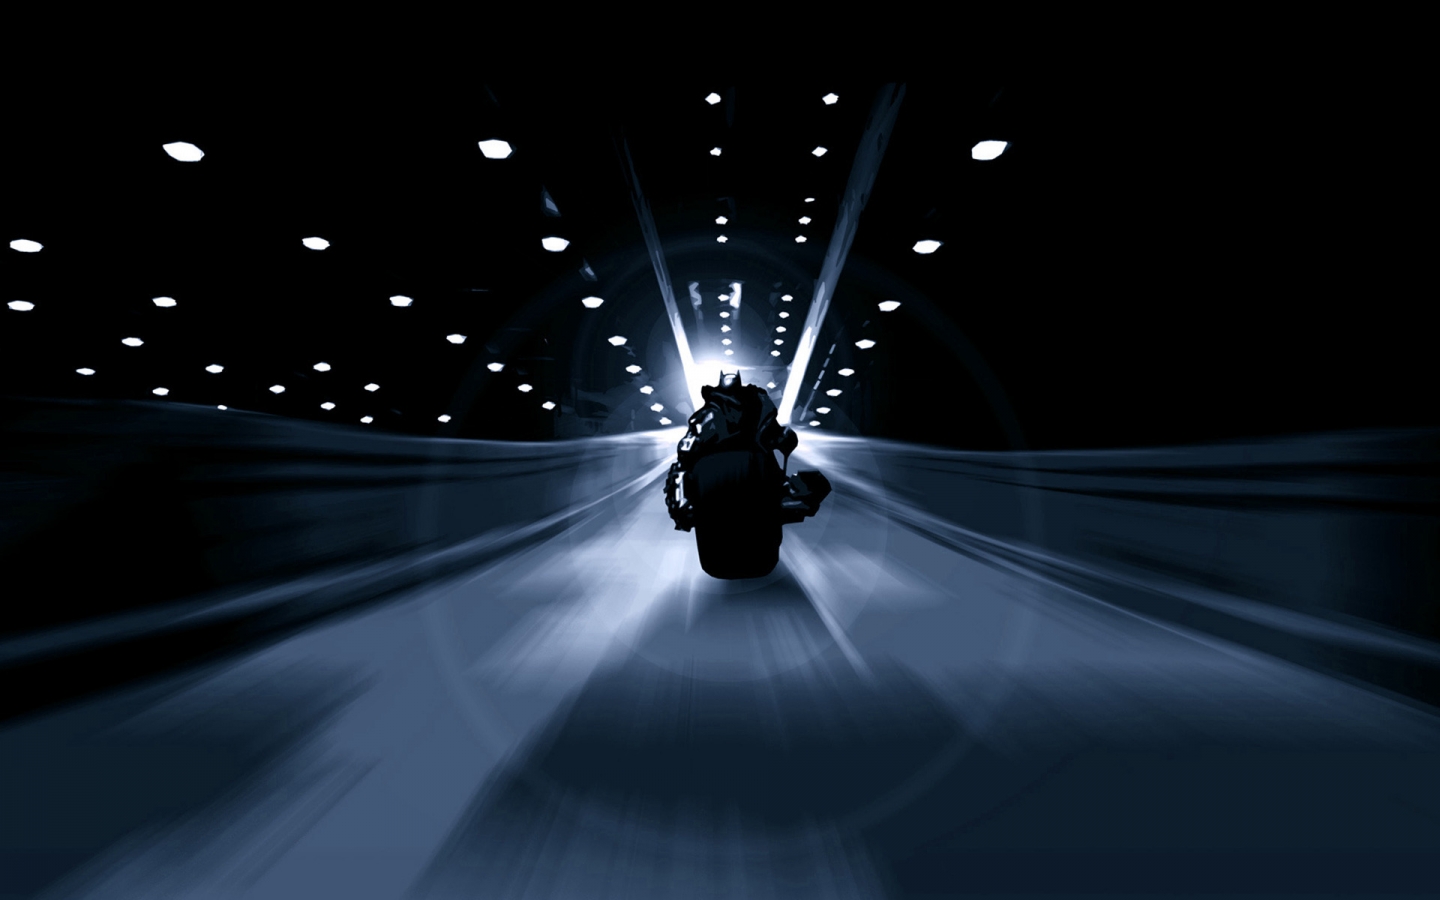 Batman Speed Bike for 1440 x 900 widescreen resolution